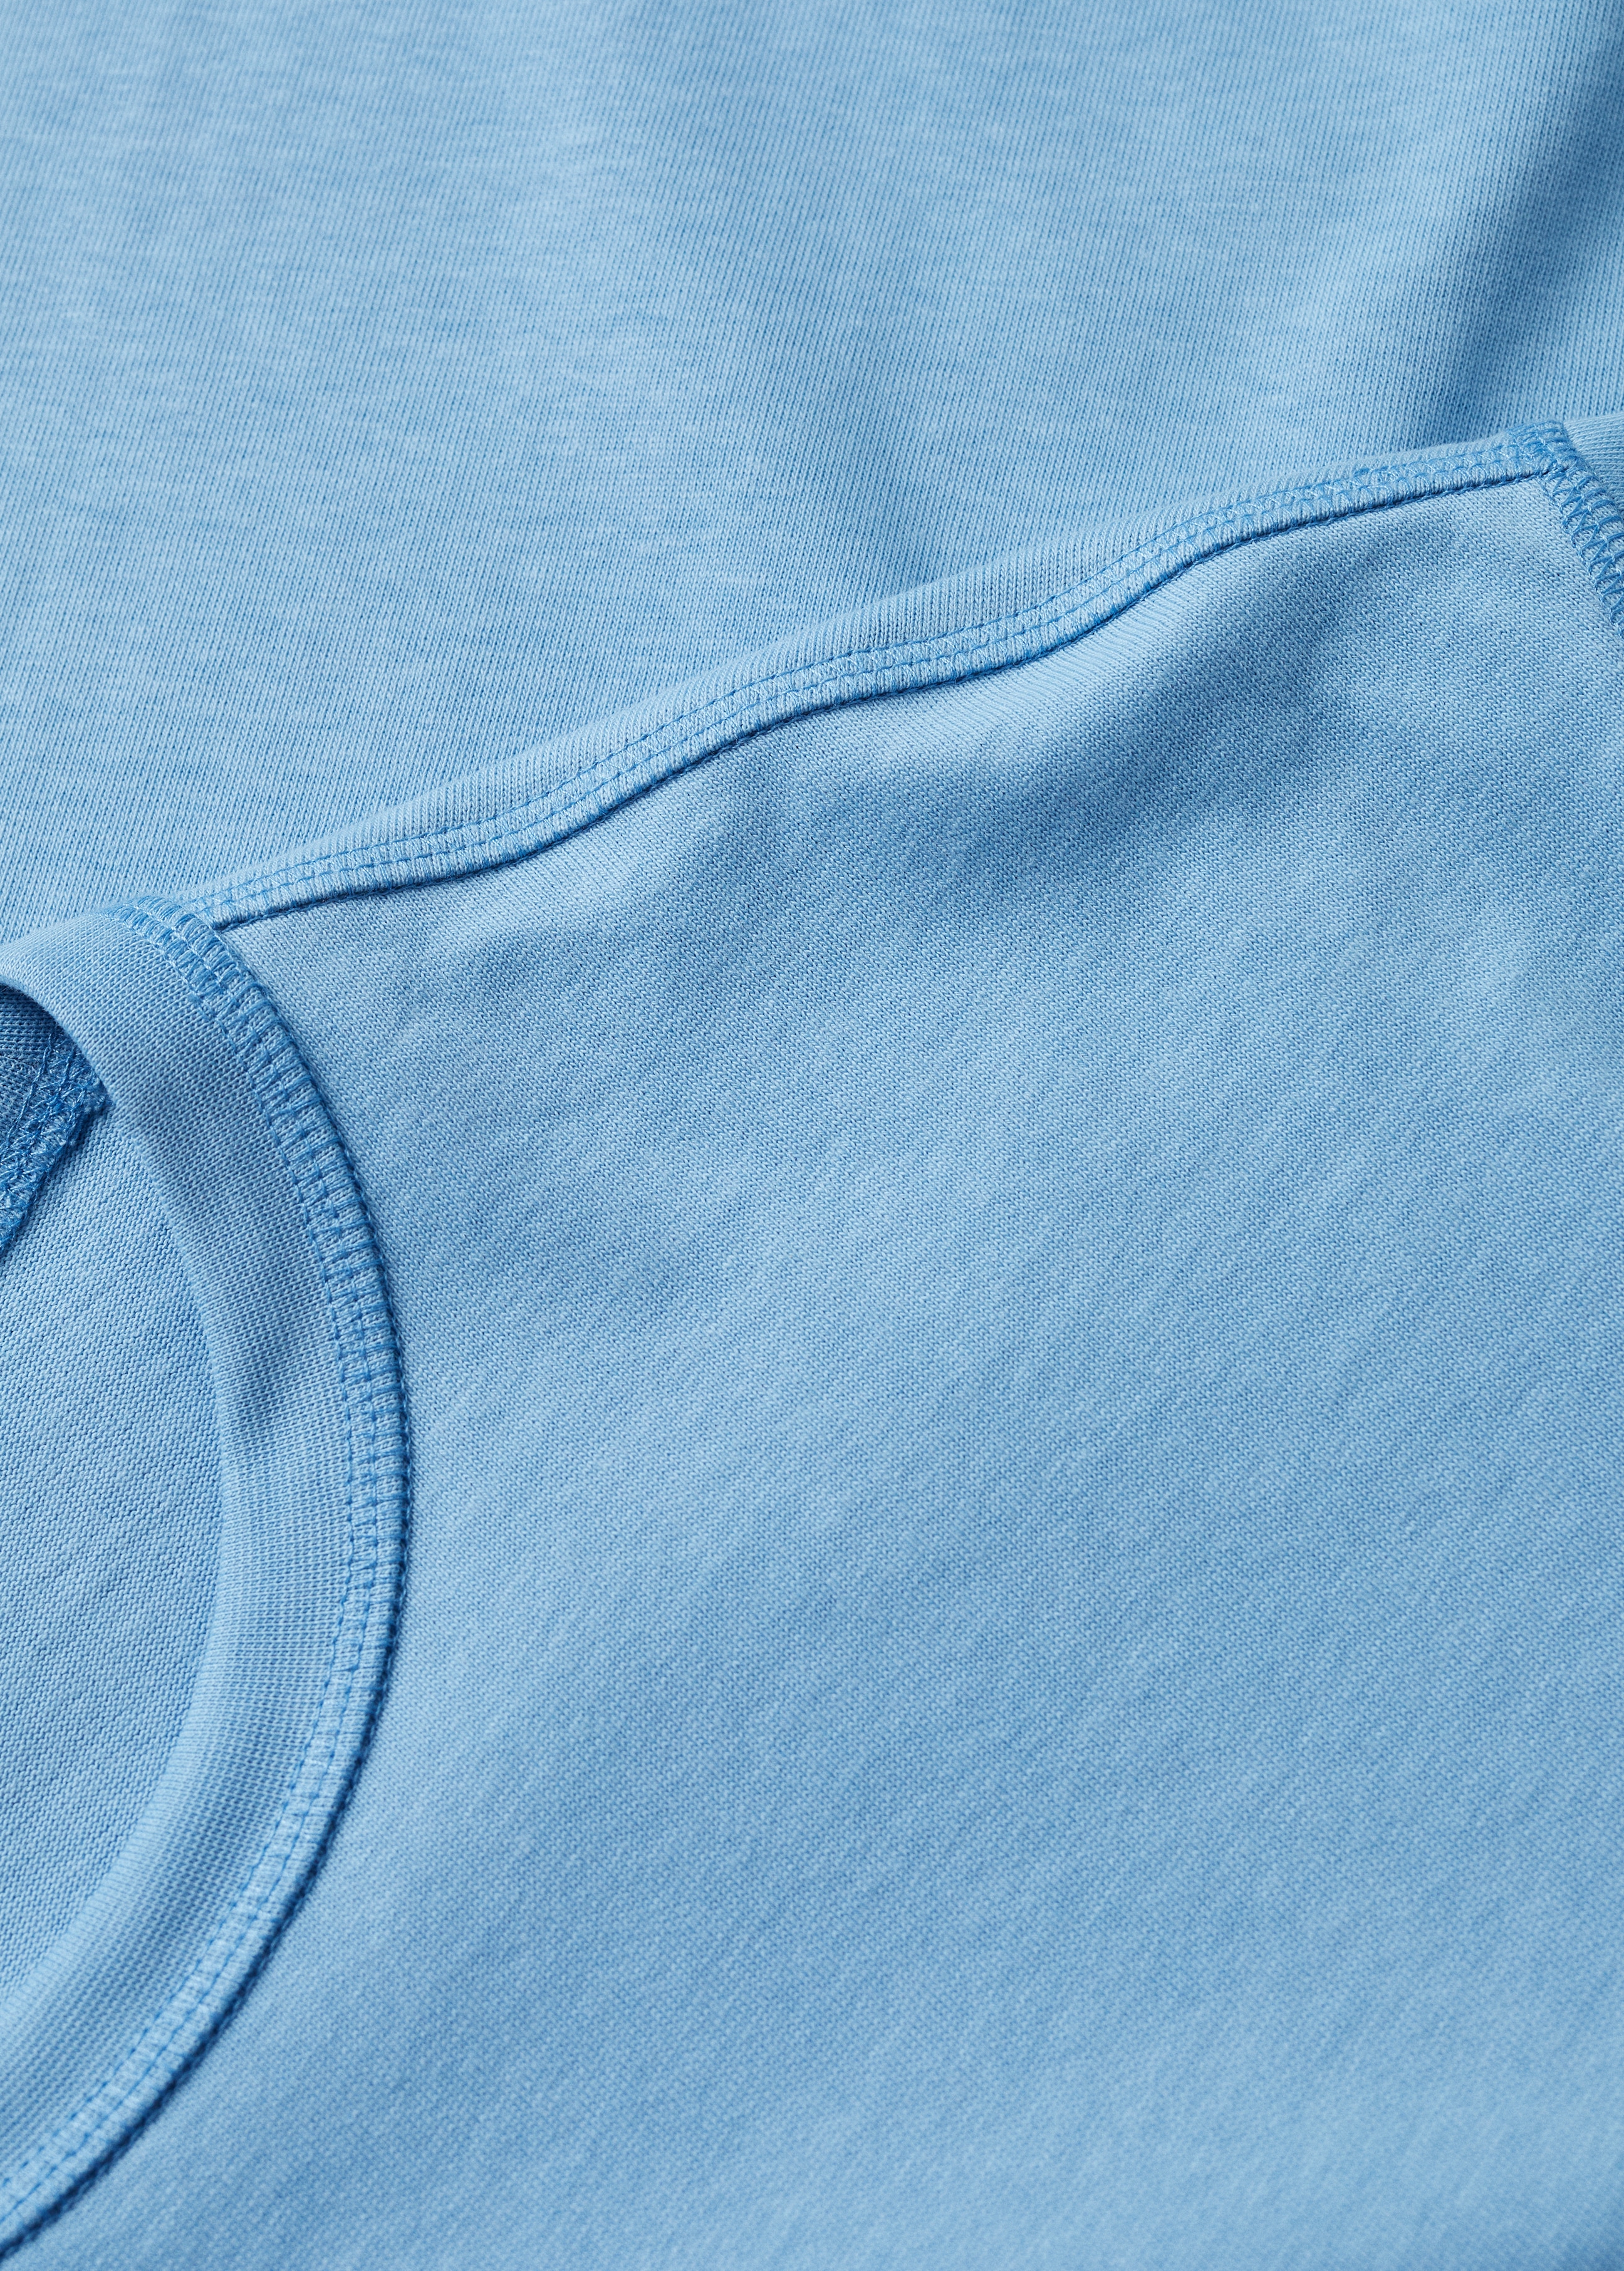 Camiseta algodón relaxed fit - Detalle del artículo 8